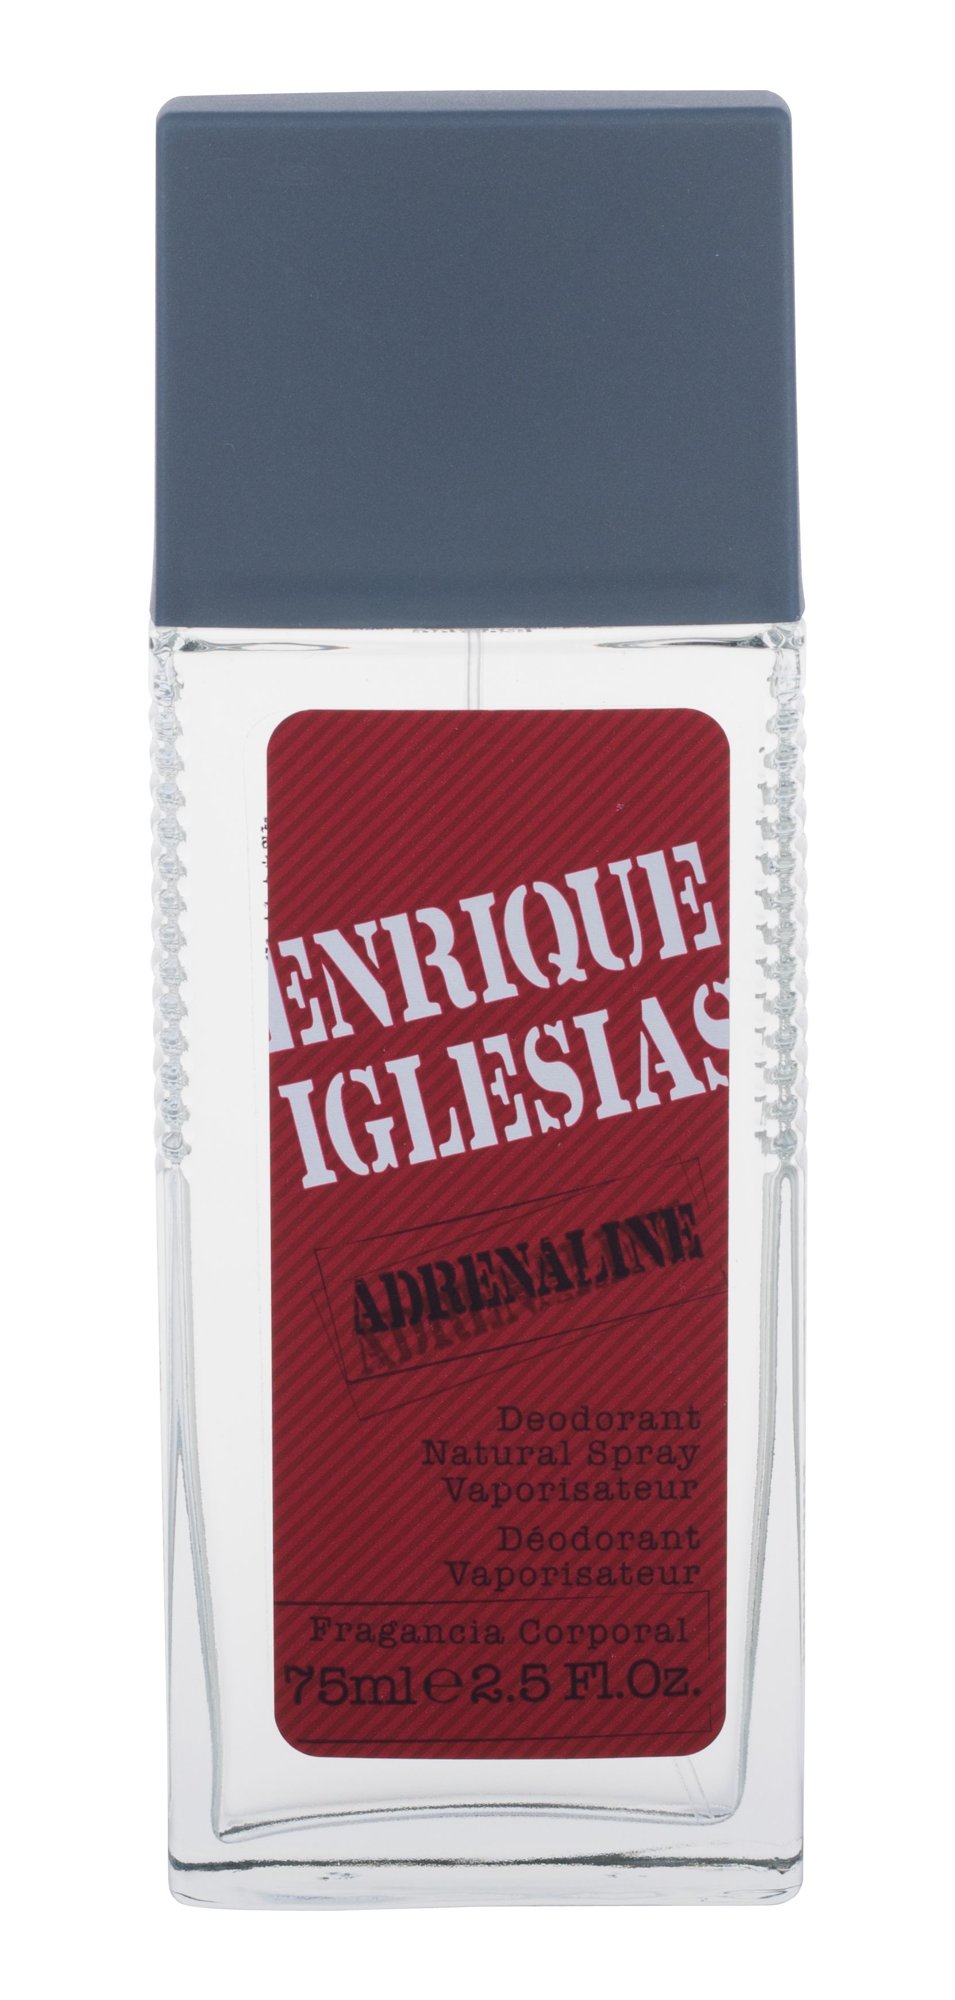 Enrique Iglesias Adrenaline dezodorantas